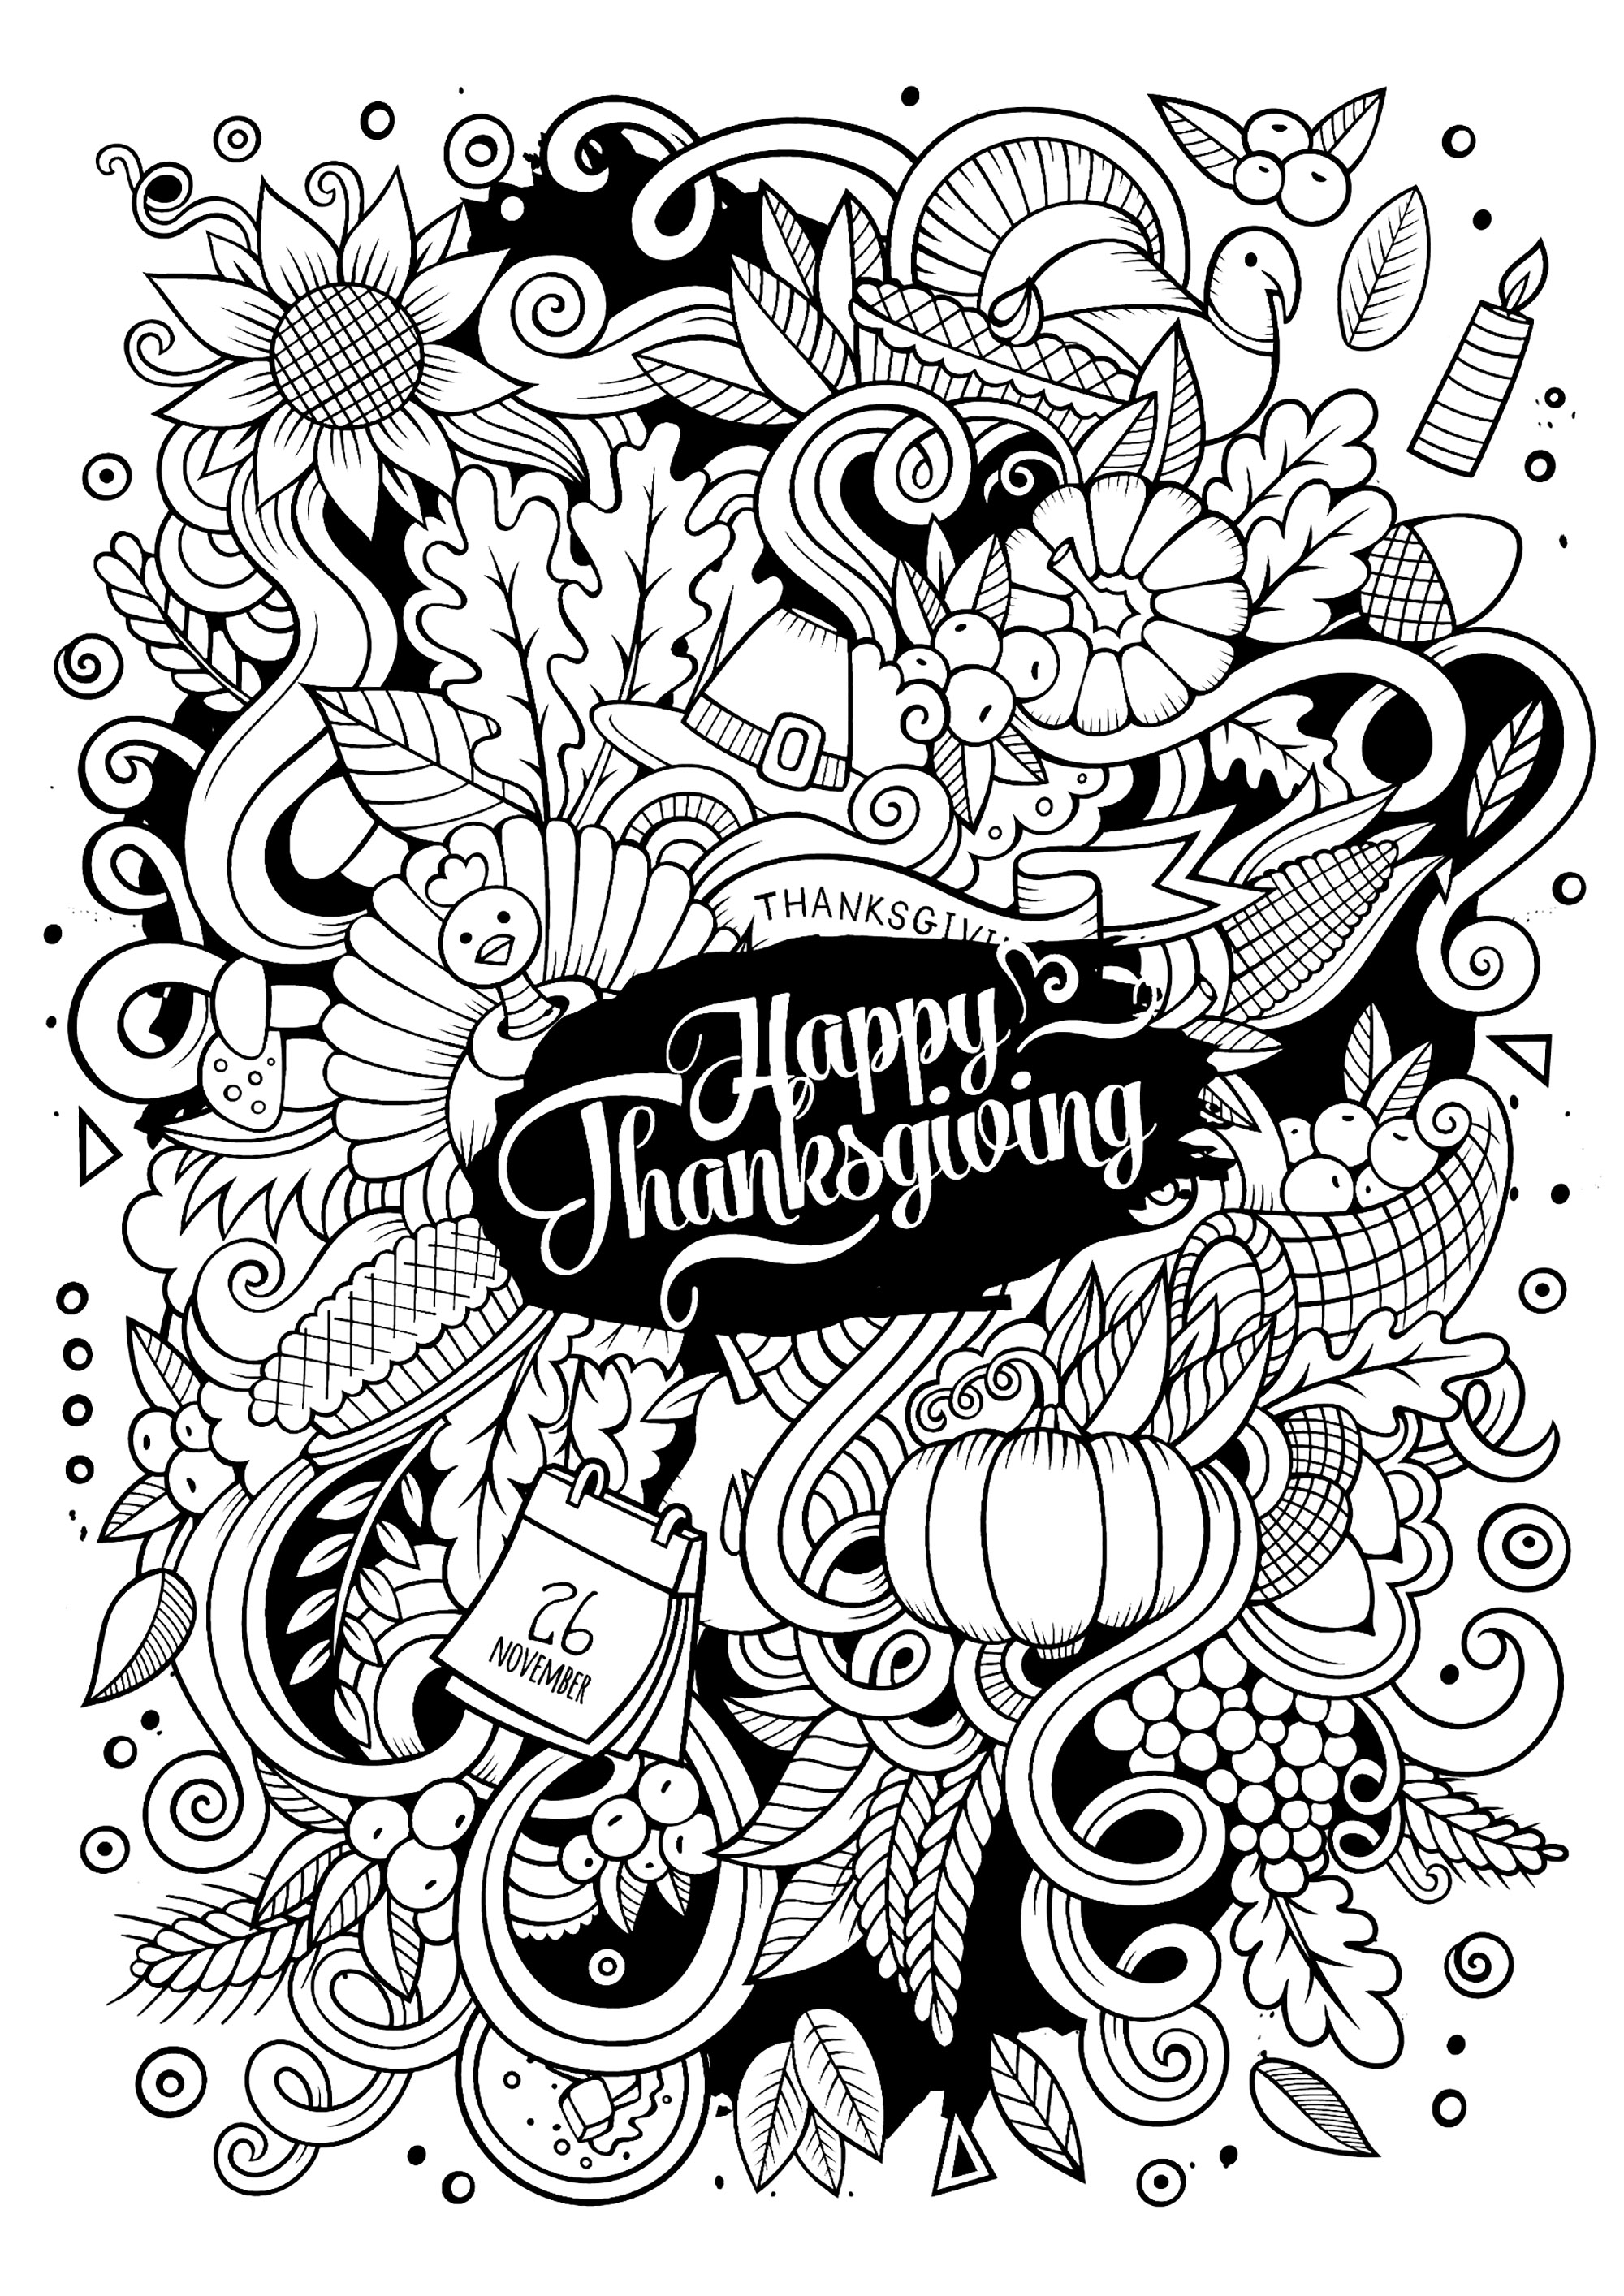 Un coloriage style 'Doodle' pour la Thanksgiving. Nombreux jolis motifs liés à l'automne et à la fête de la Thanksgiving, à colorier avec des couleurs vives et variées